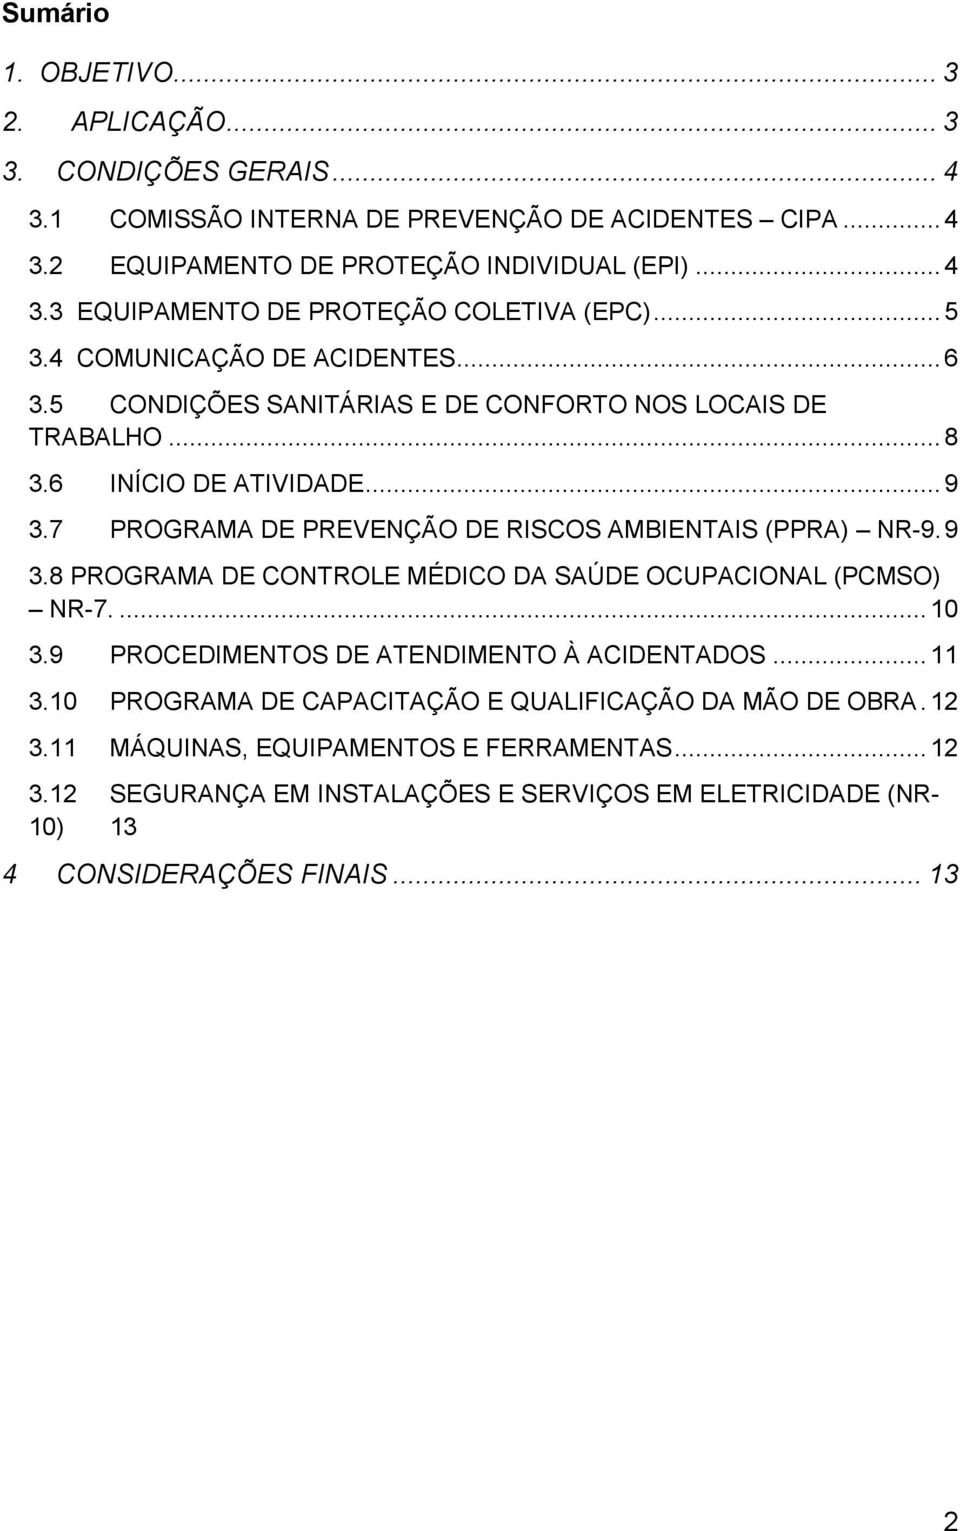 7 PROGRAMA DE PREVENÇÃO DE RISCOS AMBIENTAIS (PPRA) NR-9. 9 3.8 PROGRAMA DE CONTROLE MÉDICO DA SAÚDE OCUPACIONAL (PCMSO) NR-7.... 10 3.9 PROCEDIMENTOS DE ATENDIMENTO À ACIDENTADOS... 11 3.